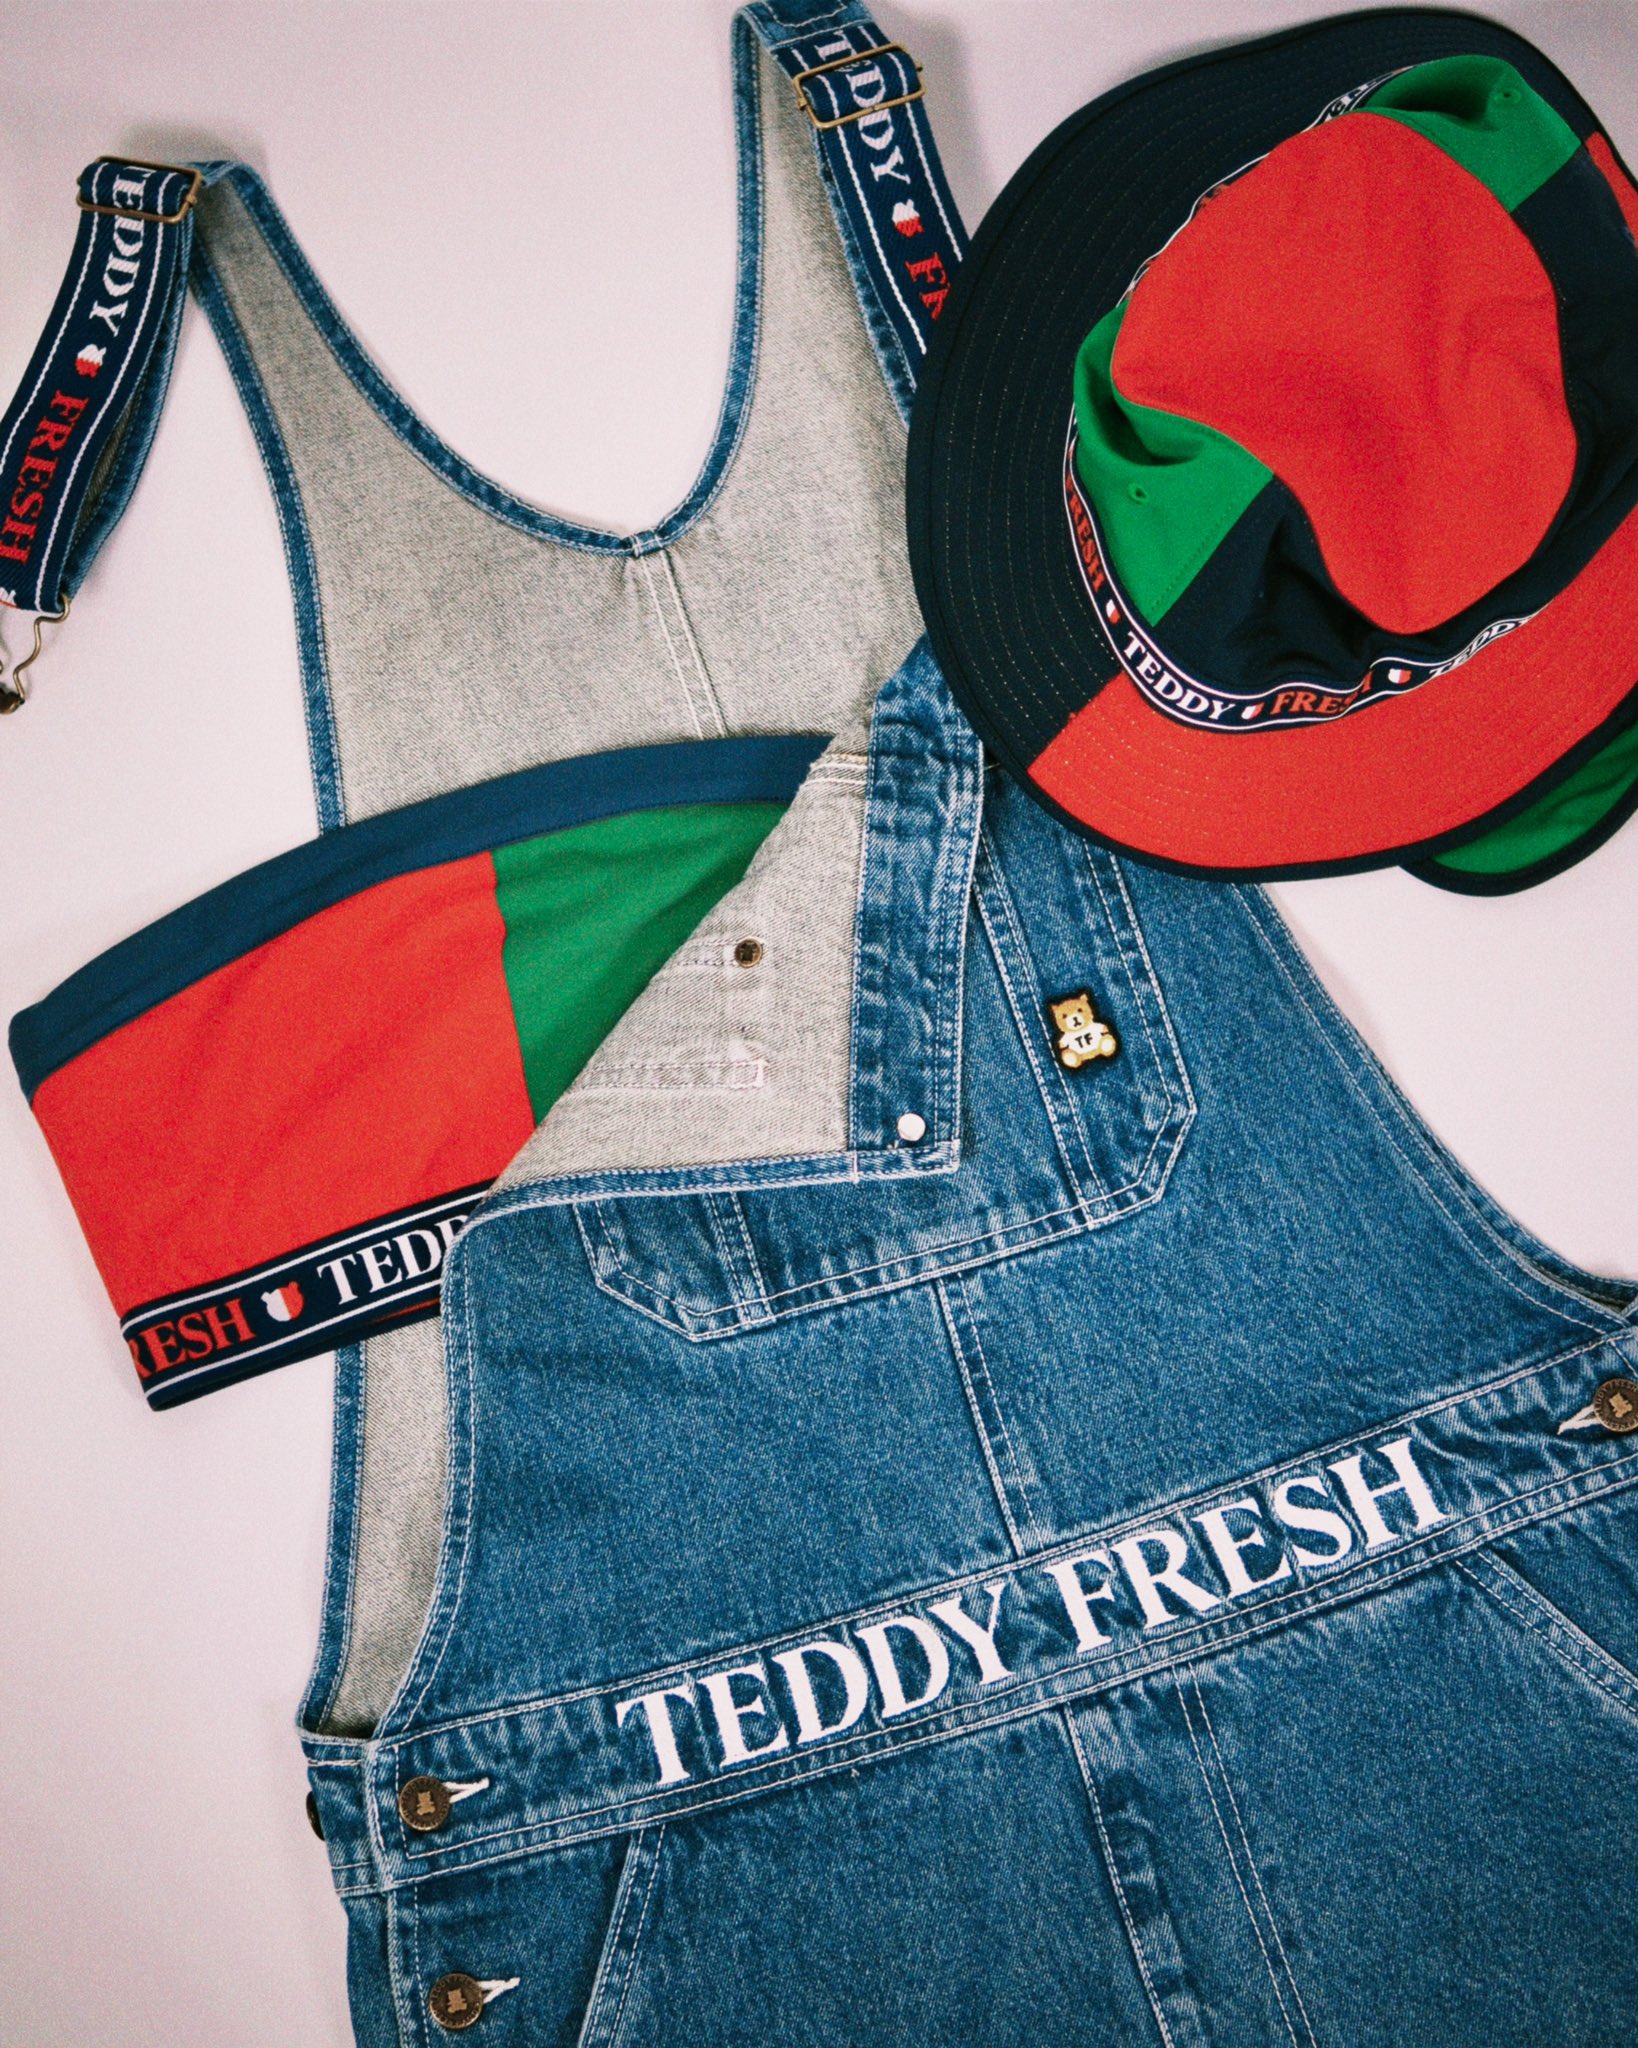 Teddy Fresh